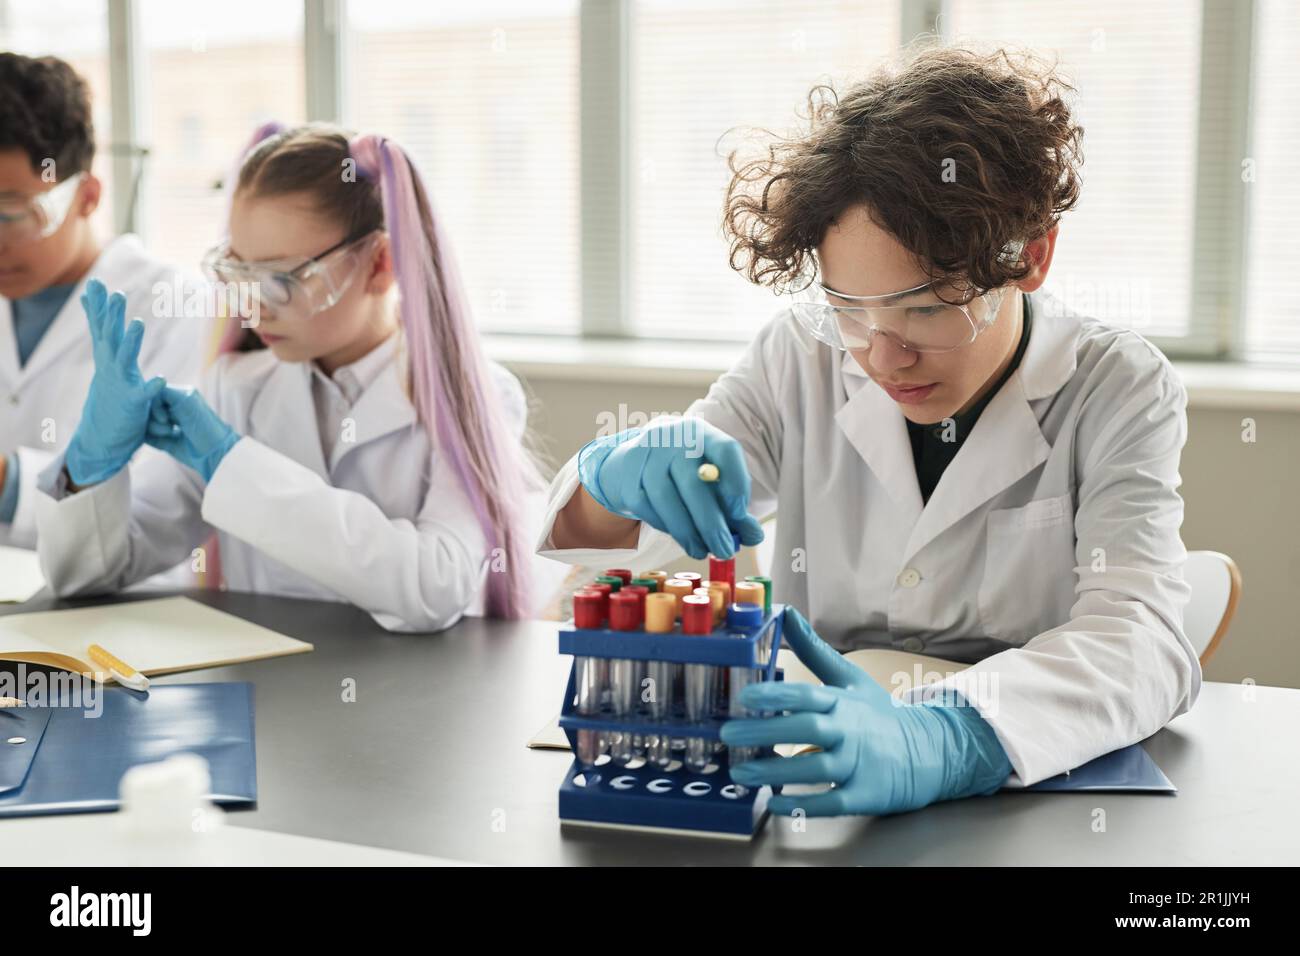 Porträt eines lockigen Teenager-Schülers, der im Wissenschaftsunterricht Becher ansieht und Experimente genießt Stockfoto